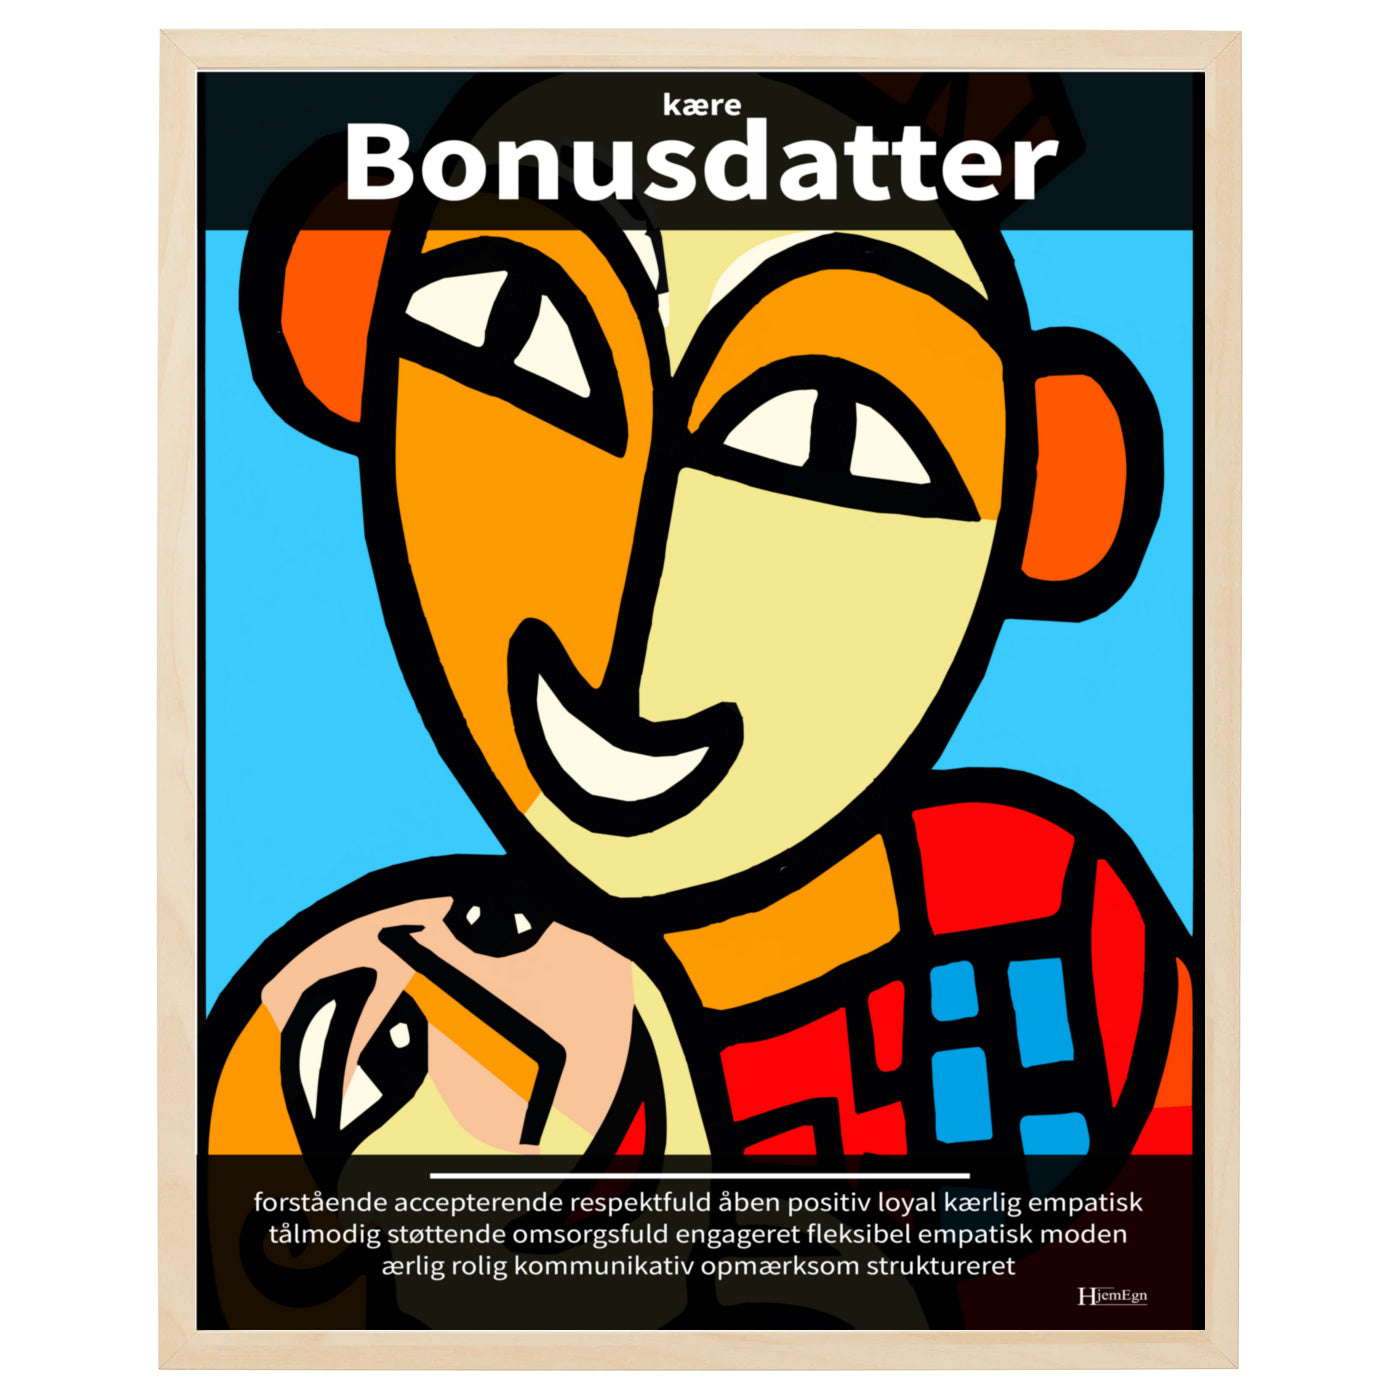 bonusdatter plakat i farver, gengivende en dagplejer i abstrakt og moderne udtryk og med opmuntrende citater og ord om en bonusdatter